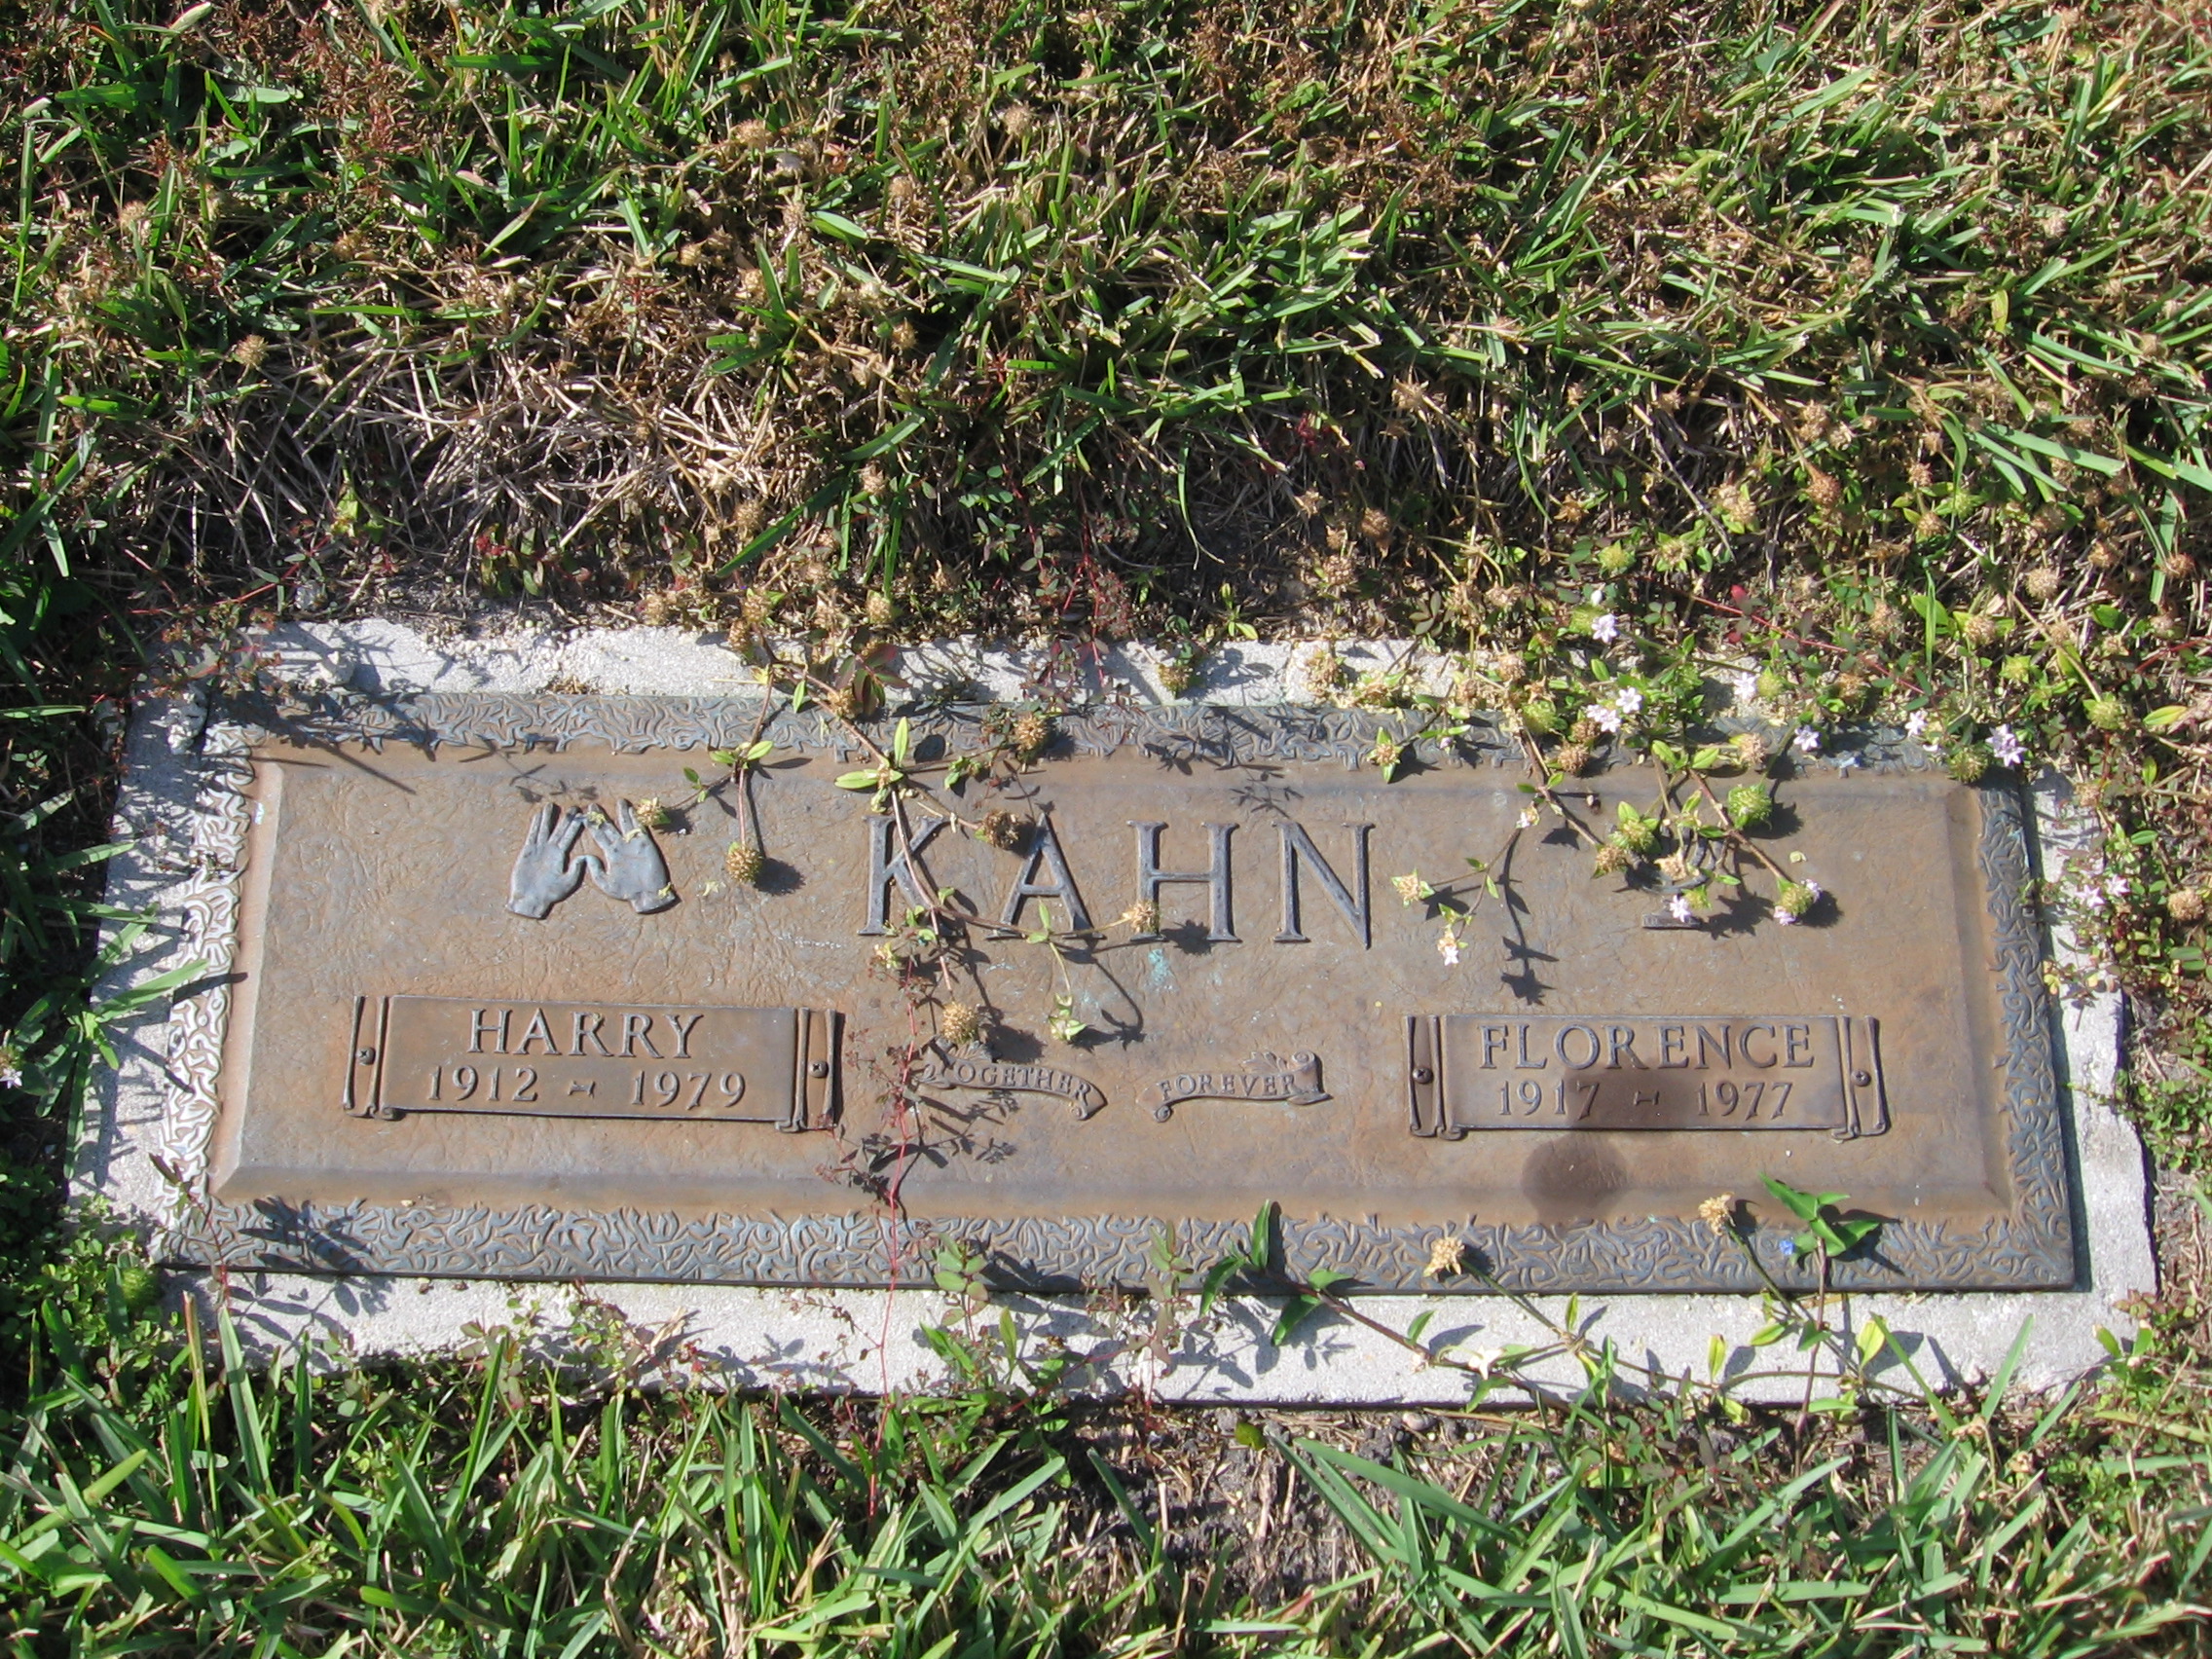 Harry Kahn